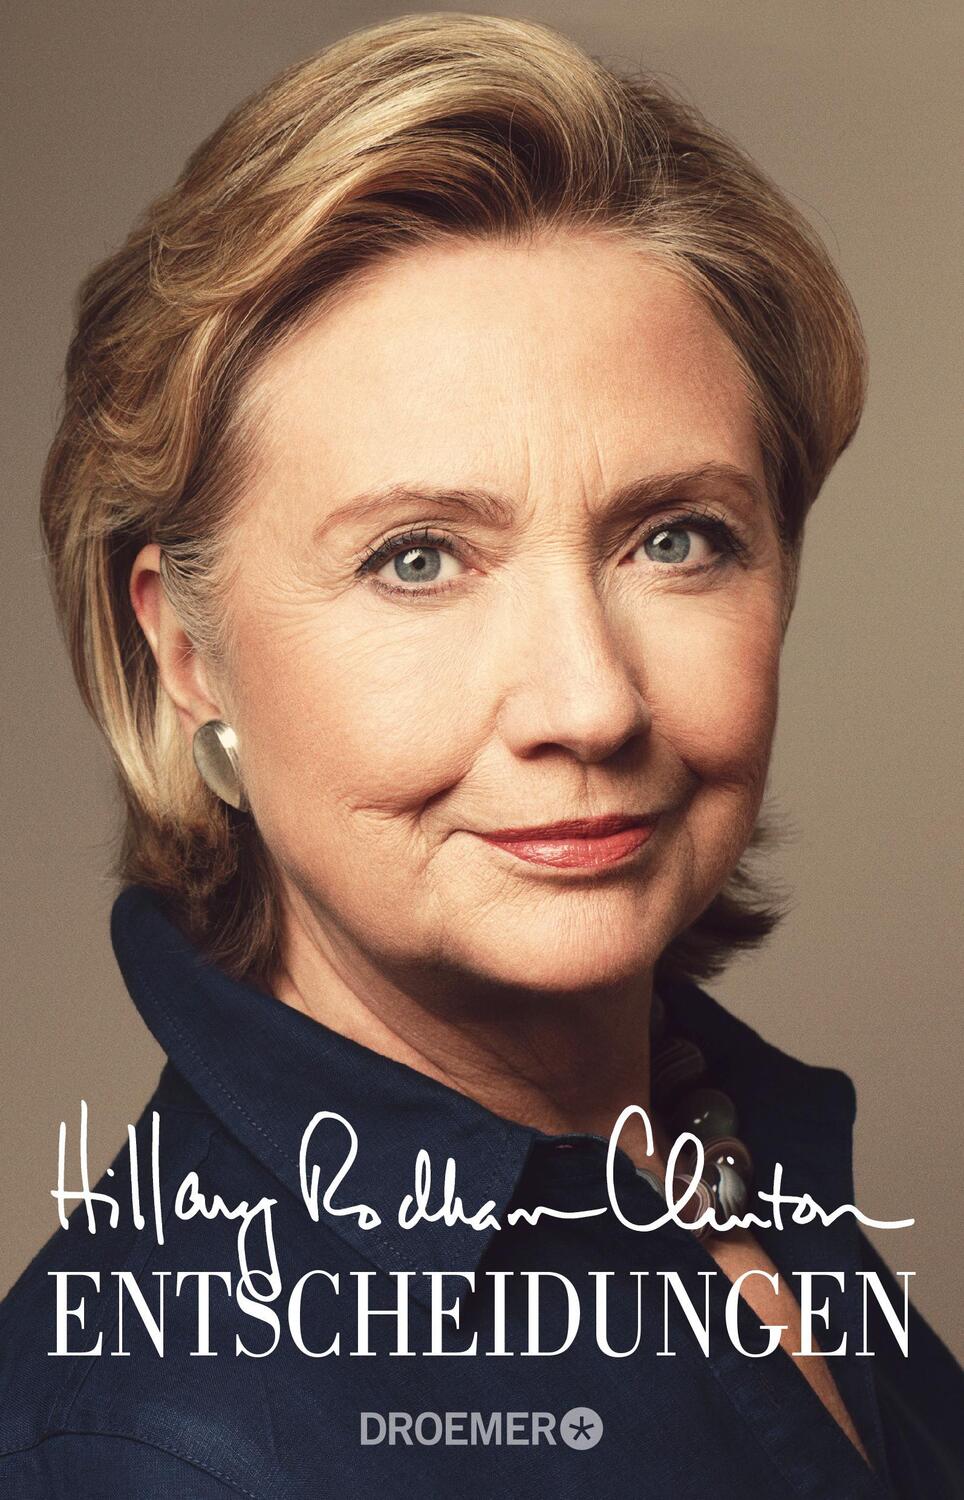 Entscheidungen - Clinton, Hillary Rodham